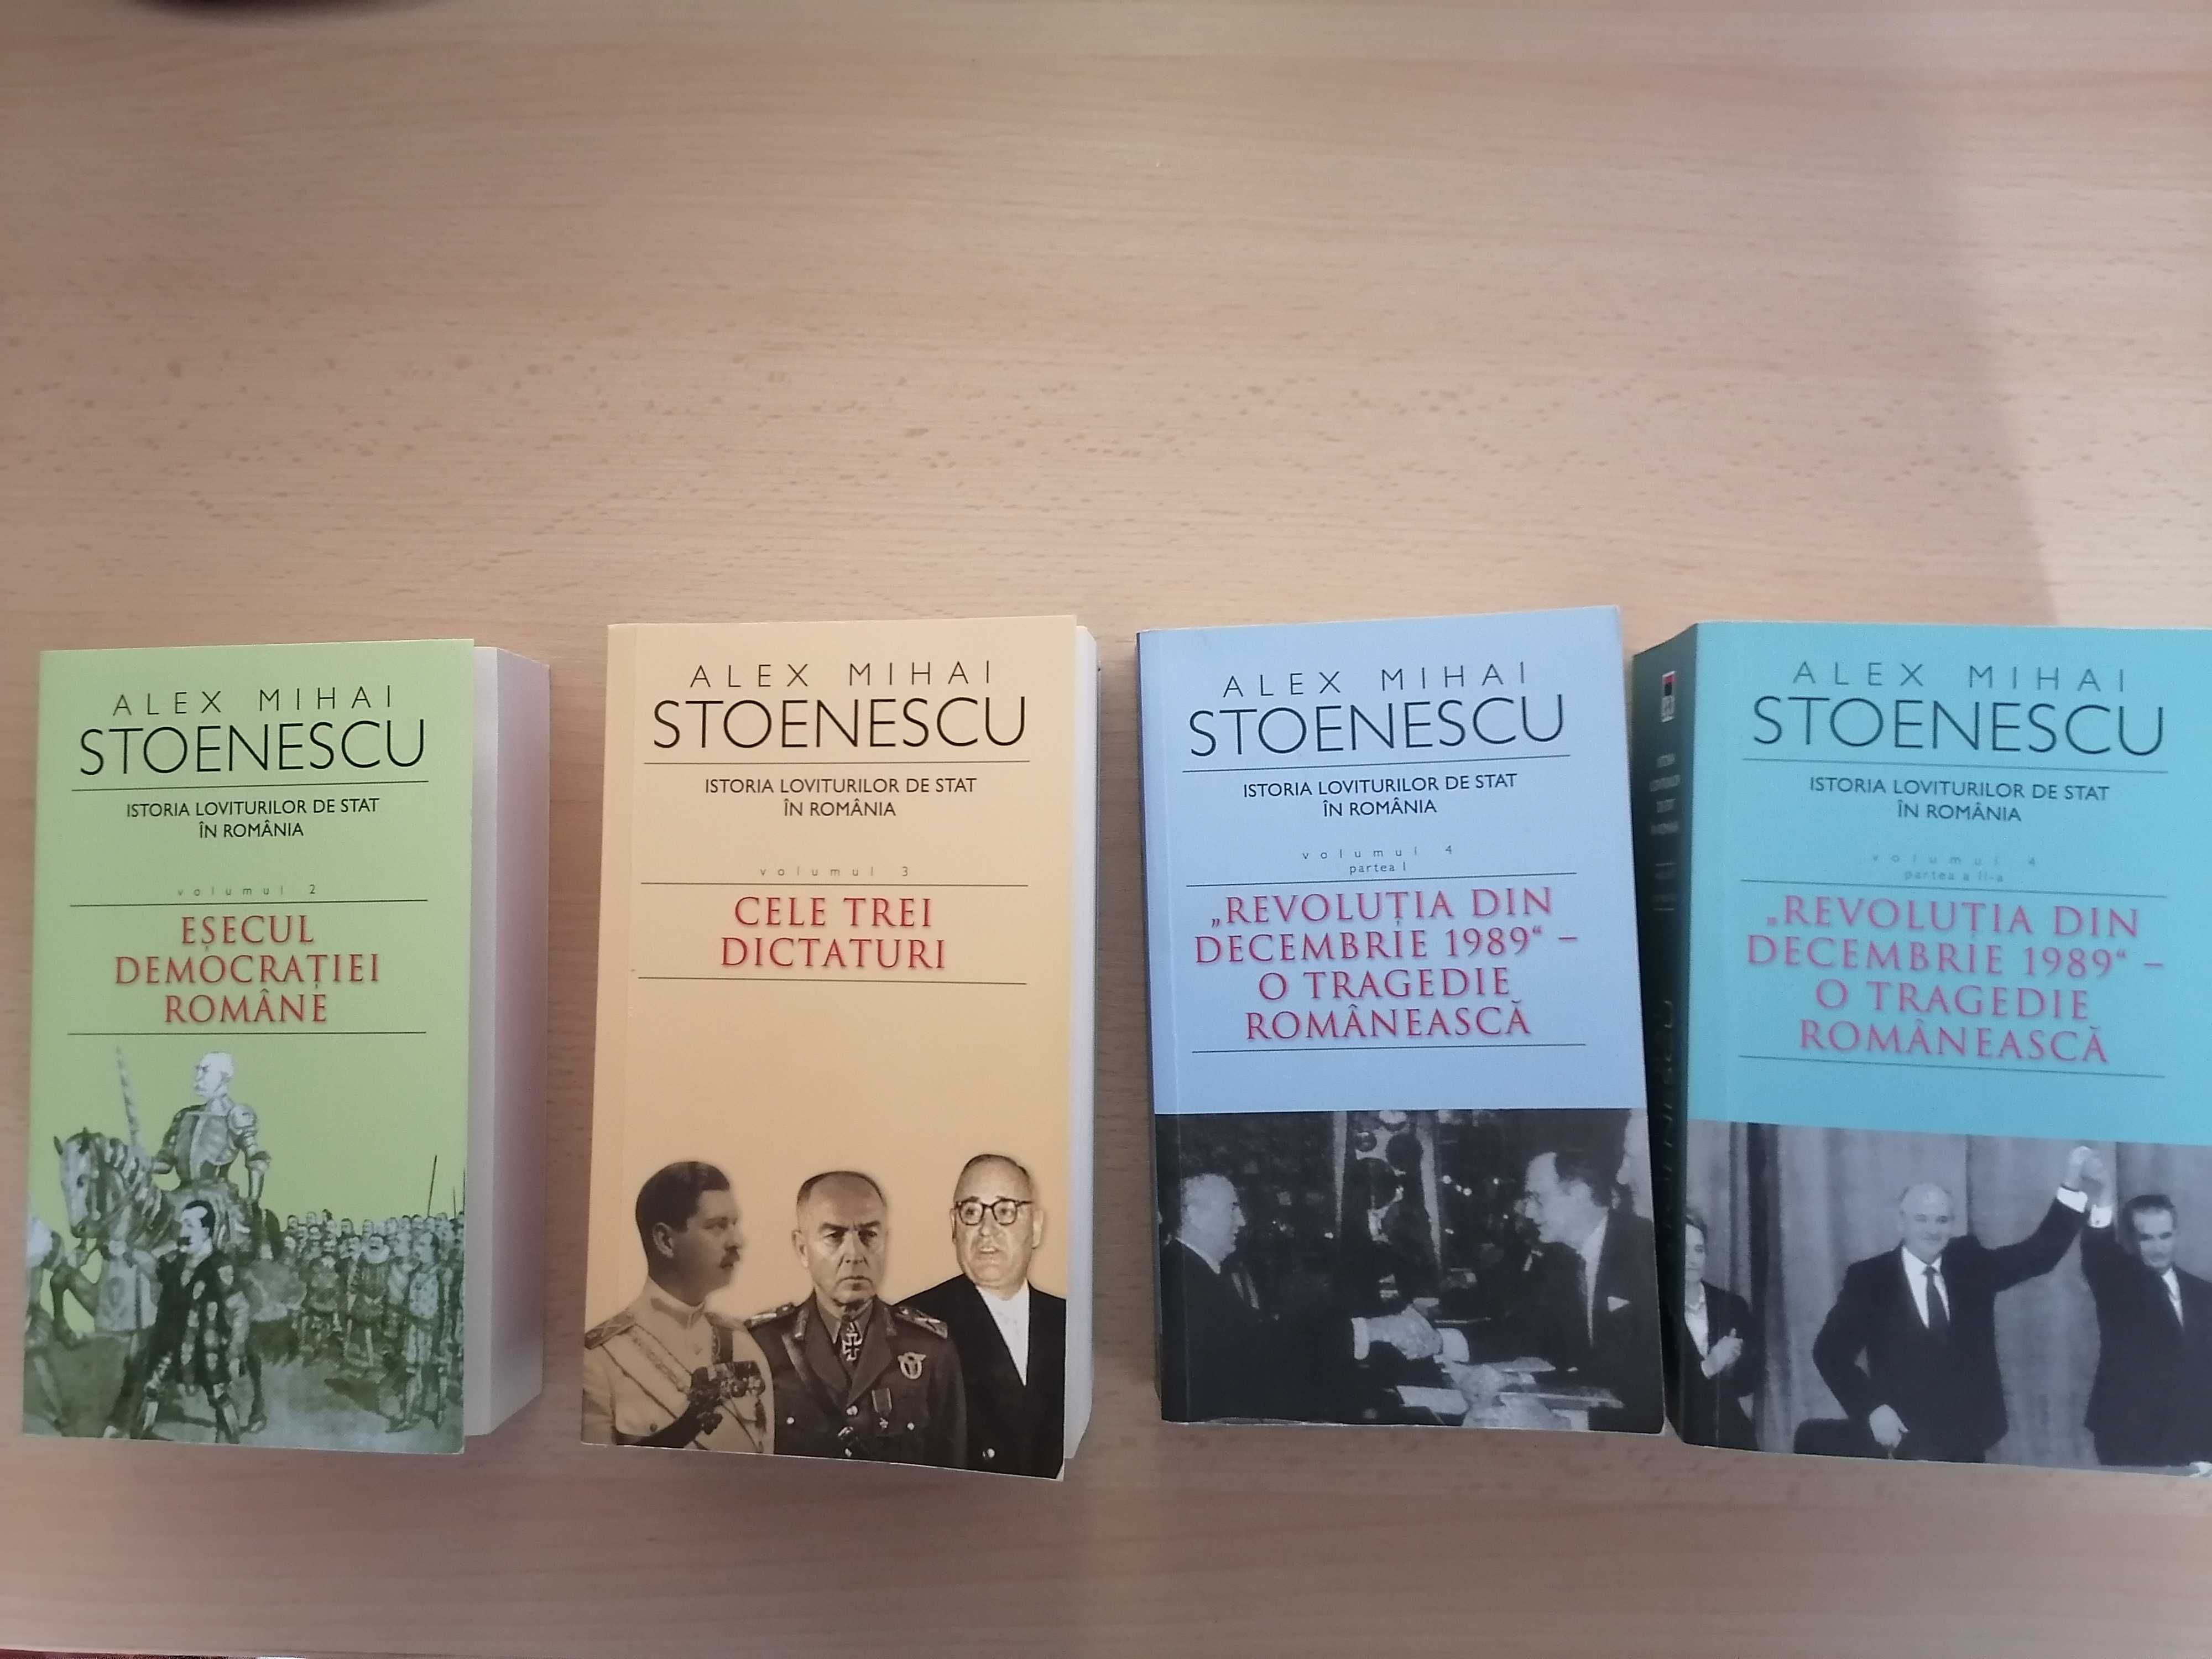 Istoria loviturilor de stat - Alex Mihai Stoenescu